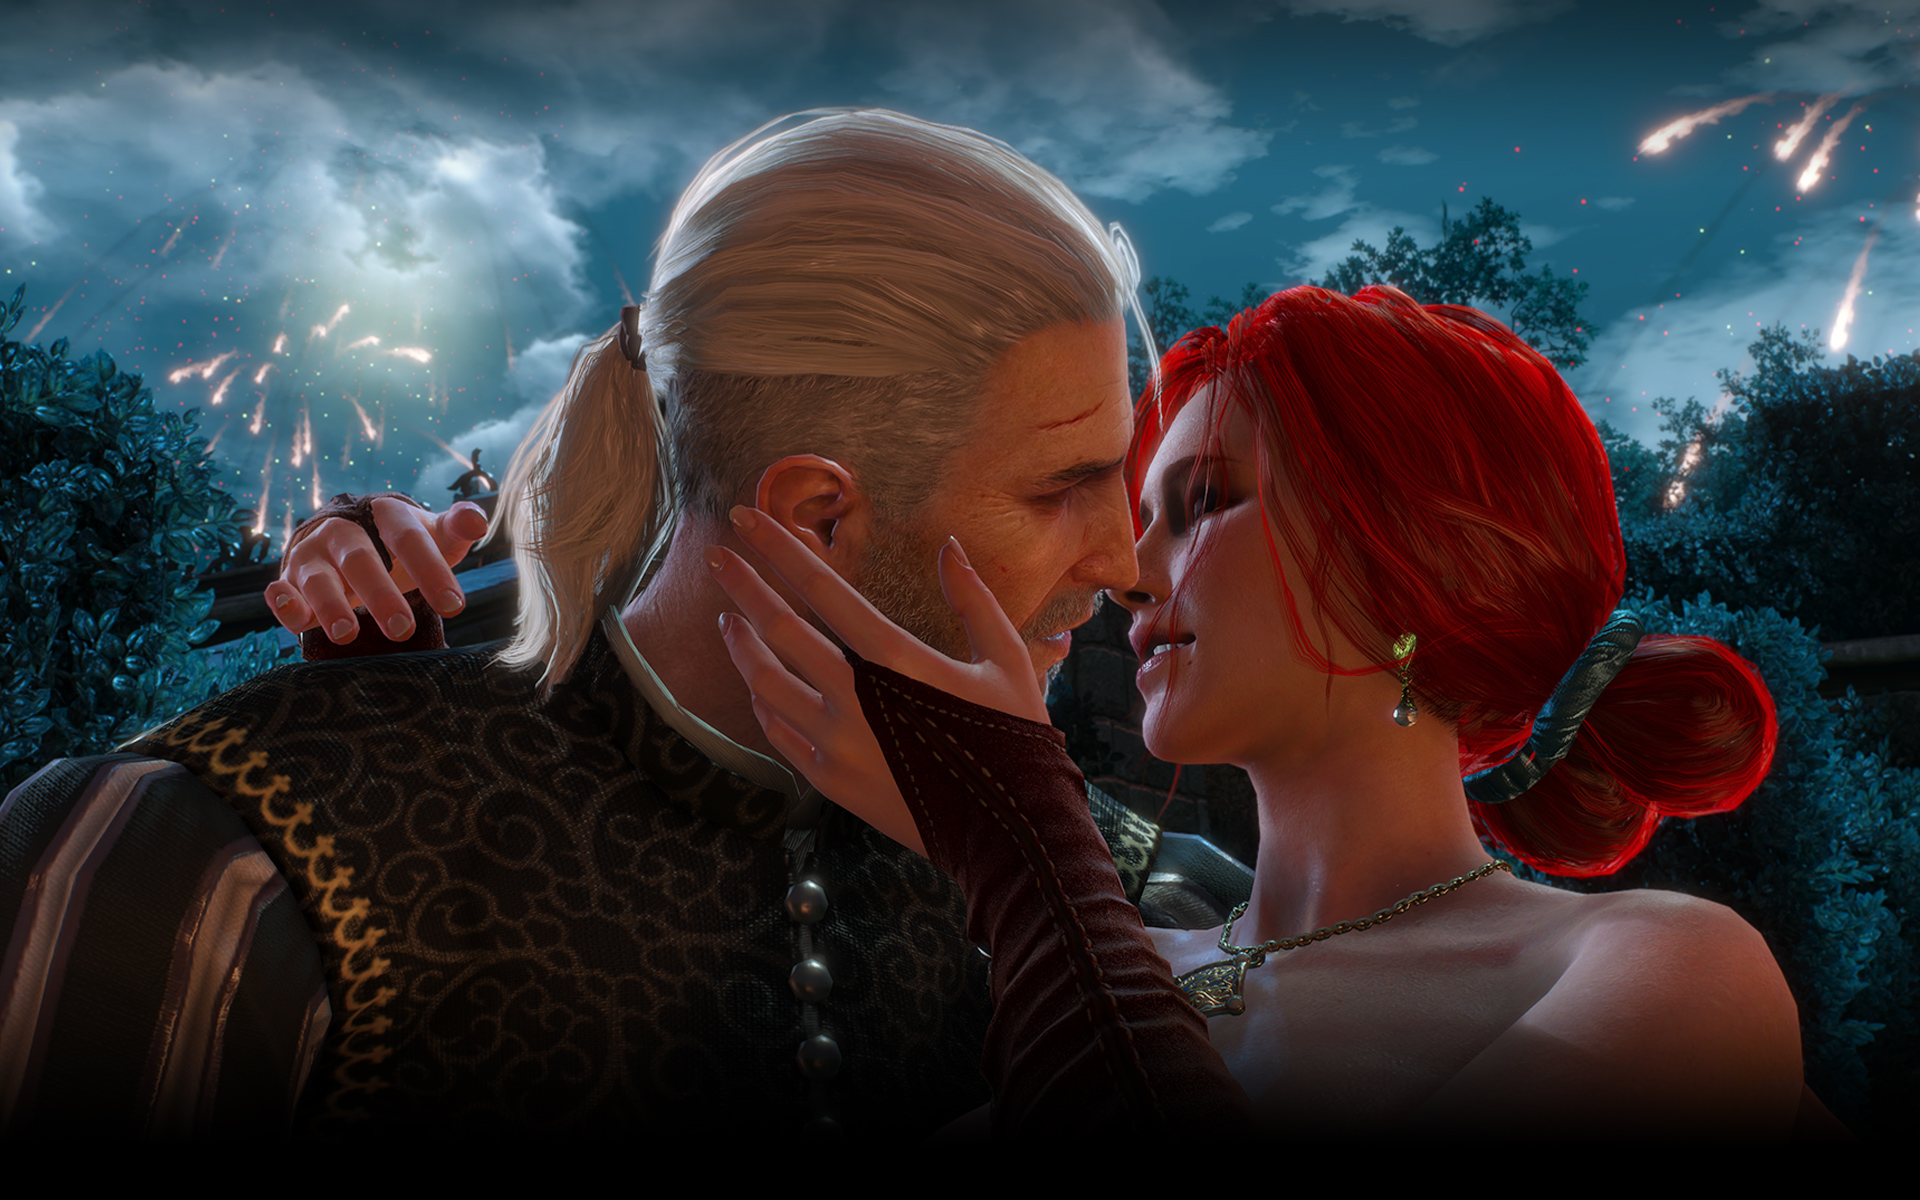 《巫师3》pc版新截图 白狼亲吻两个情人画面太美